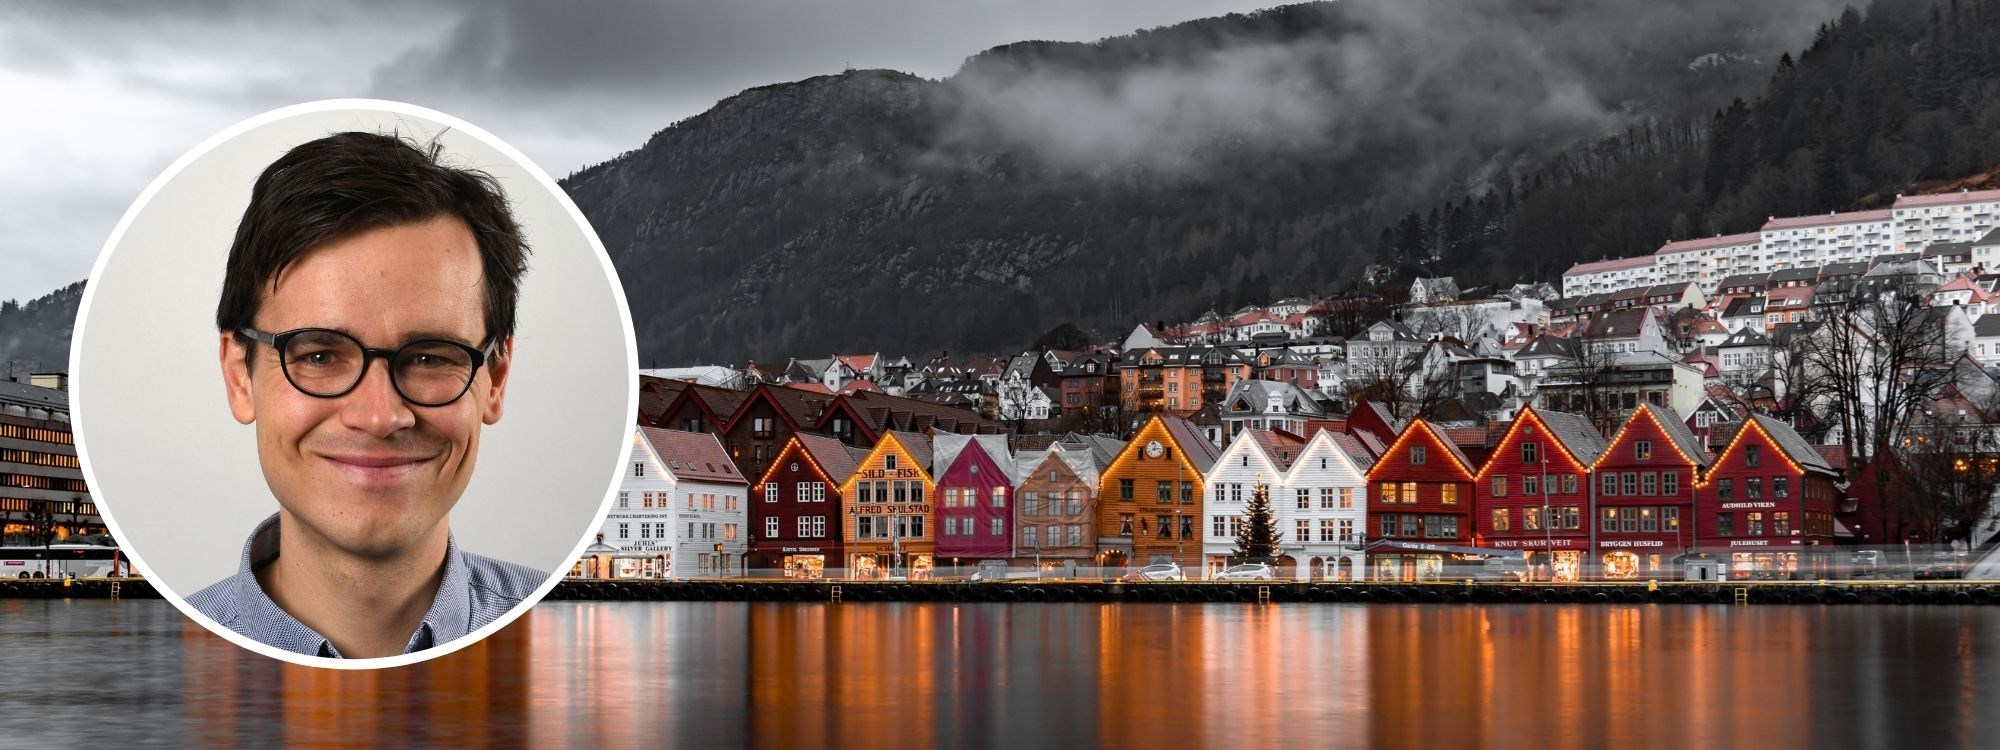 Bilde av Ole-Andreas Elvik Næss og Bryggen i Bergen.